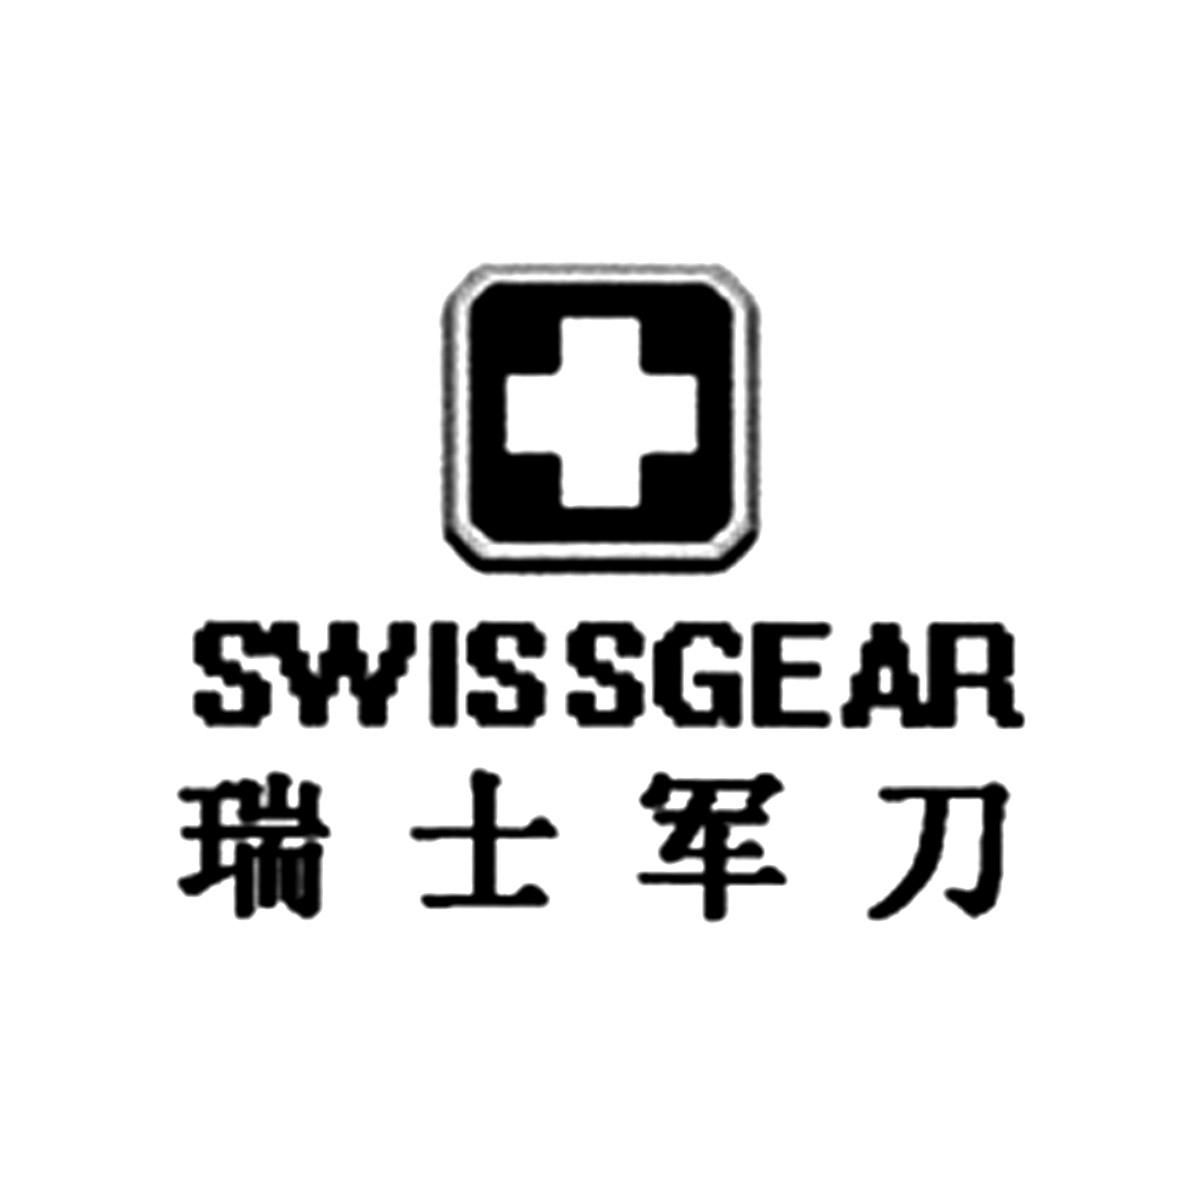 瑞士军刀 swissgear 商标公告